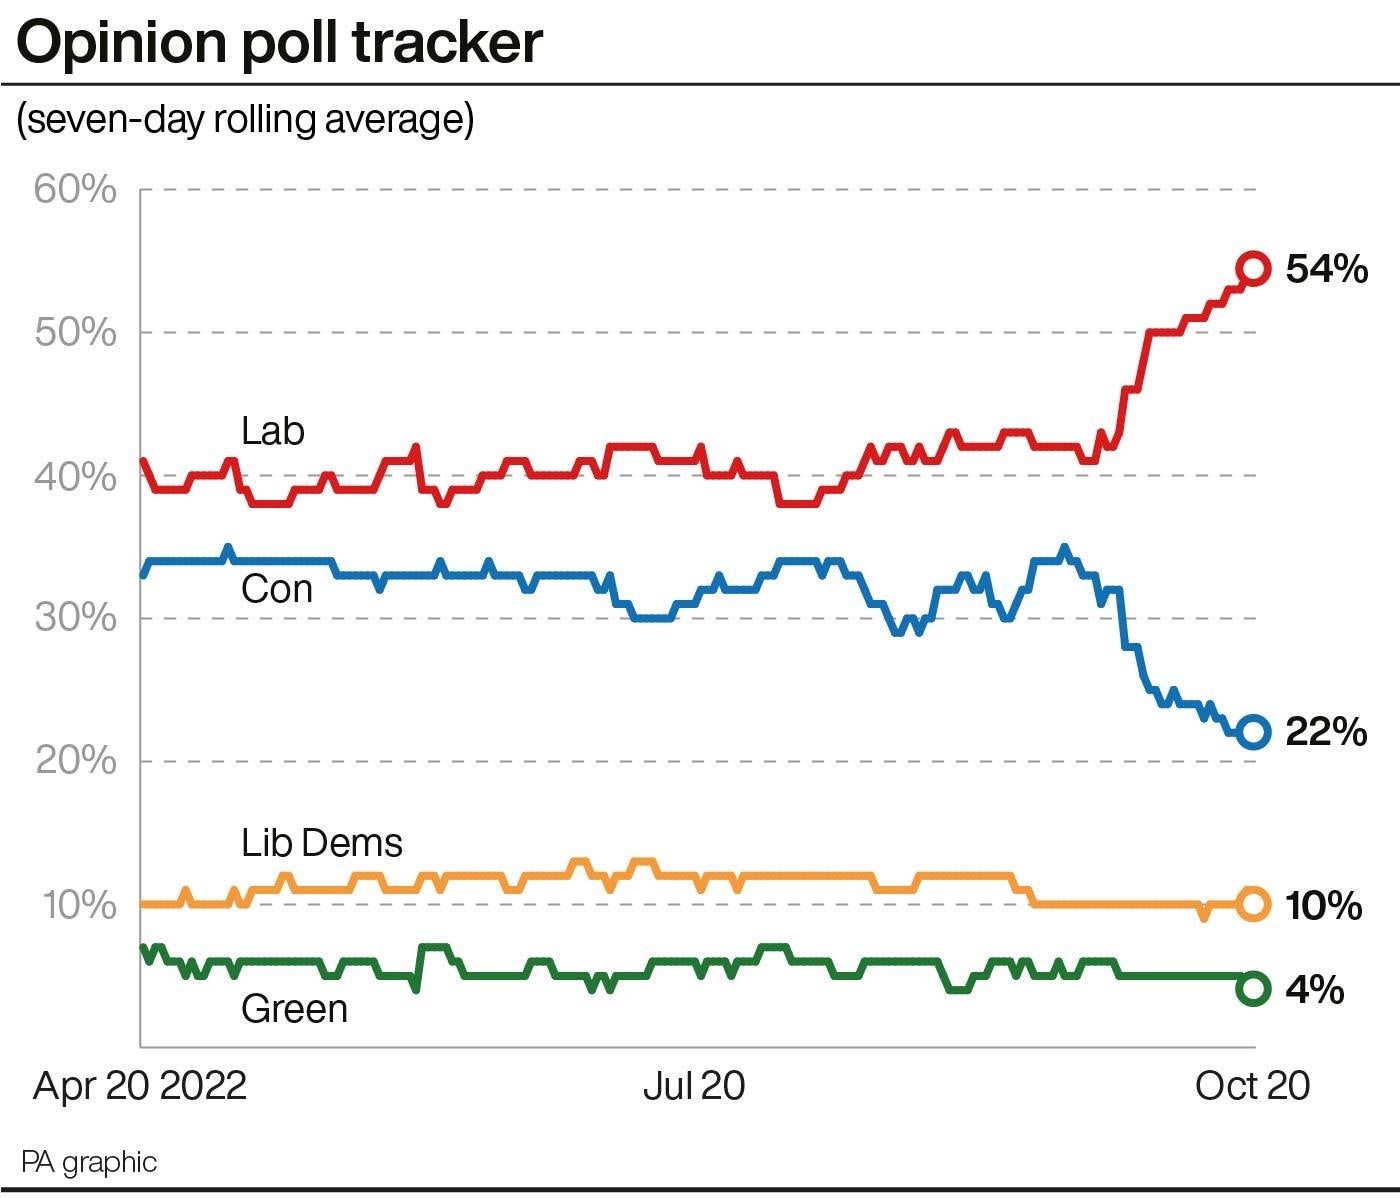 Esta gráfica muestra cómo el Partido Laborista ha aumentado su ventaja en las encuestas, por encima del Partido Conservador